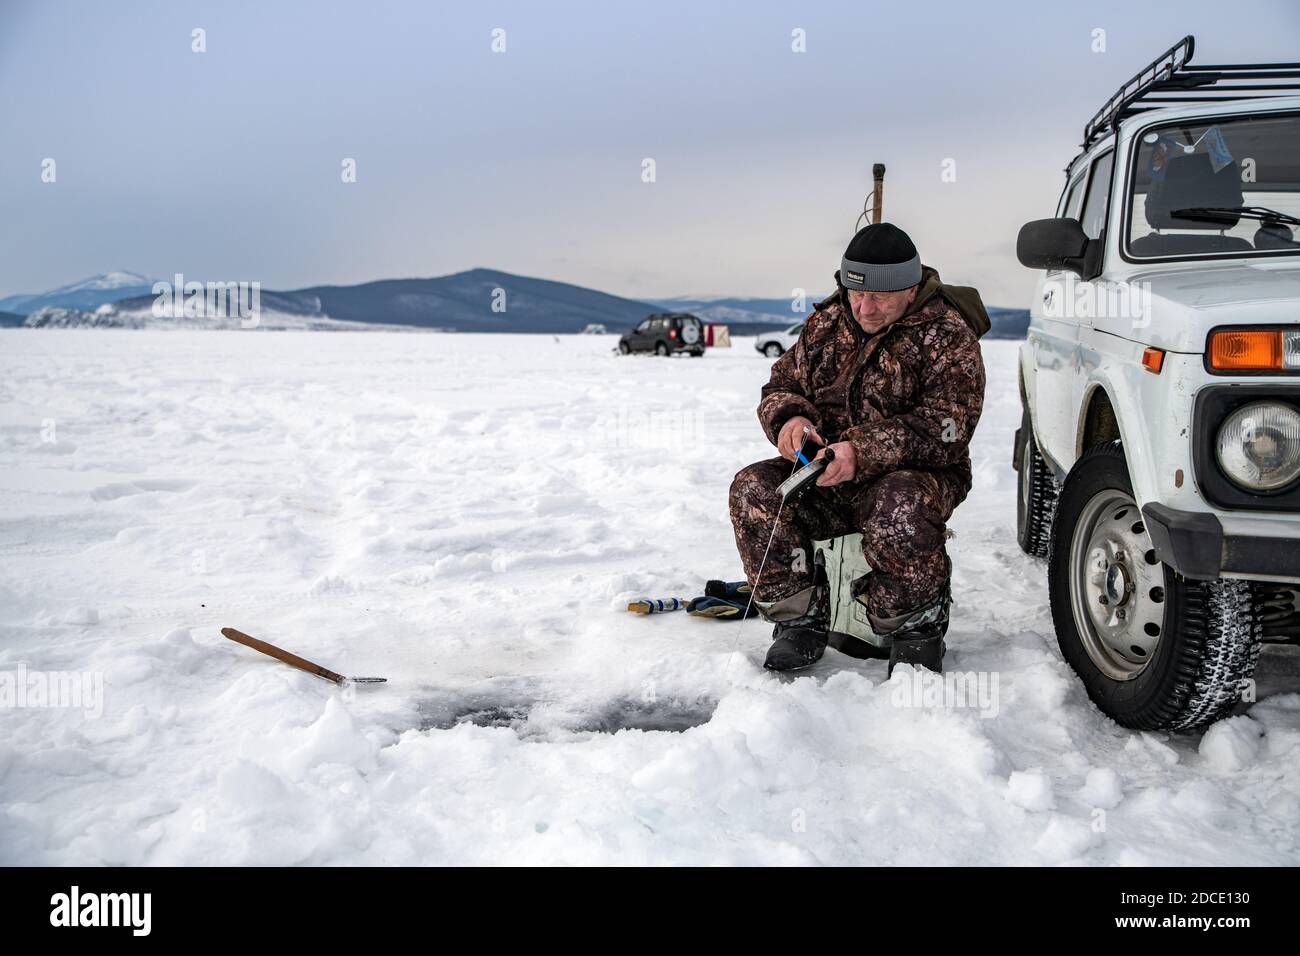 Baikalsee, Sibirien, Russland - 05. März 2020: Wintereisfischen. Ein Fischer fischt auf Spinten in der Nähe von Zelten und Autos auf dem Baikalsee auf einem Marsch d Stockfoto